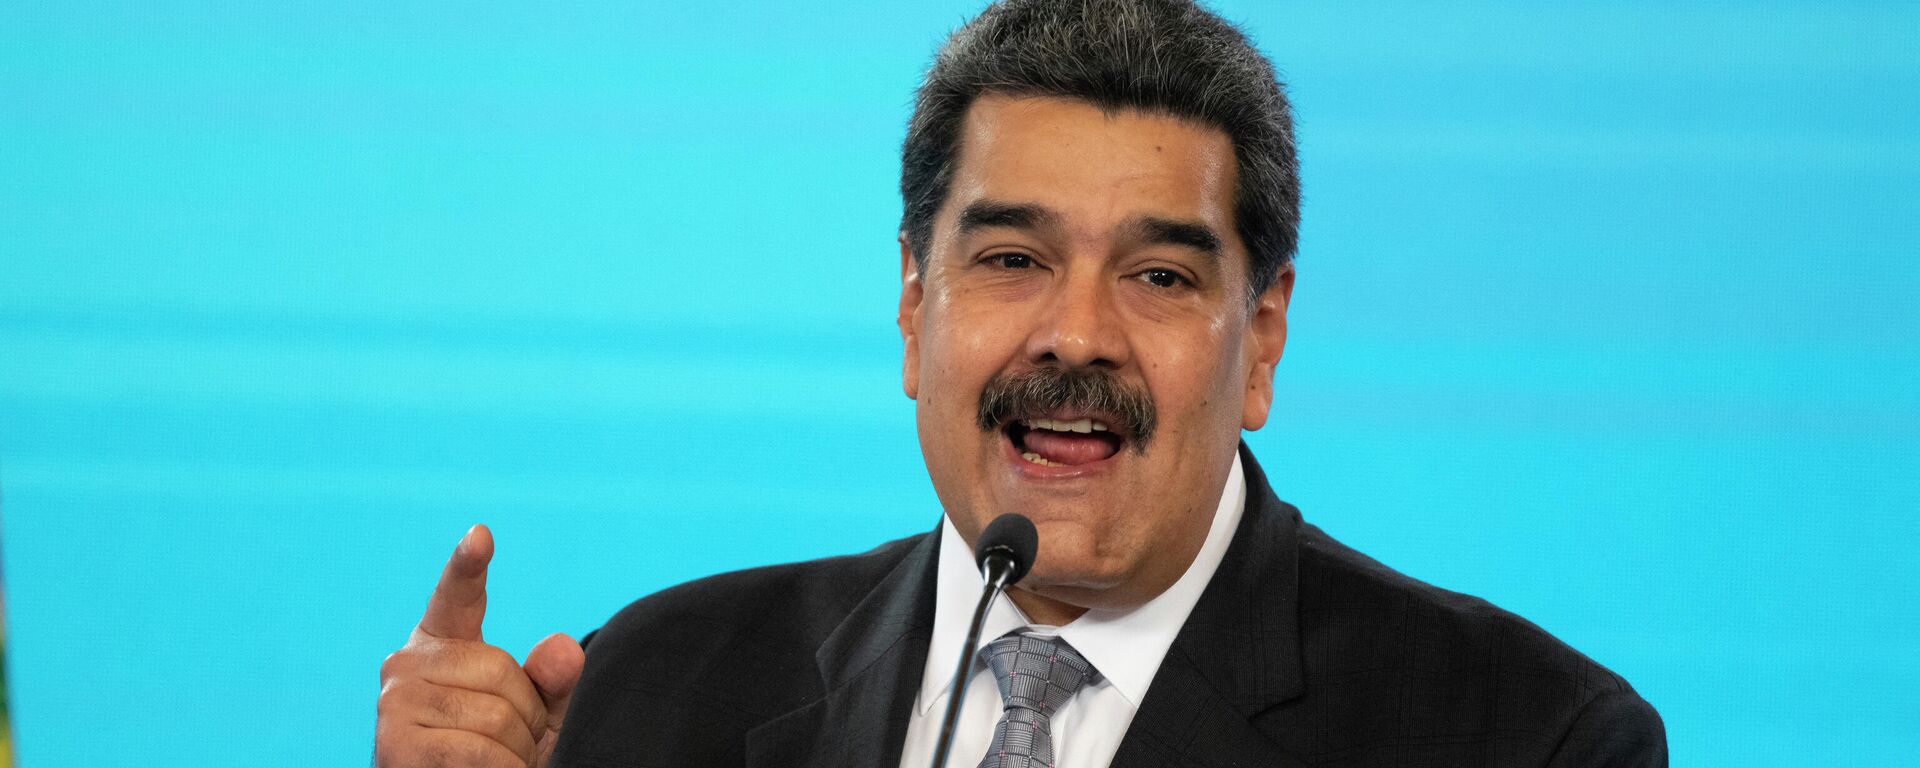 Nicolás Maduro, presidente de Venezuela - Sputnik Mundo, 1920, 21.03.2021